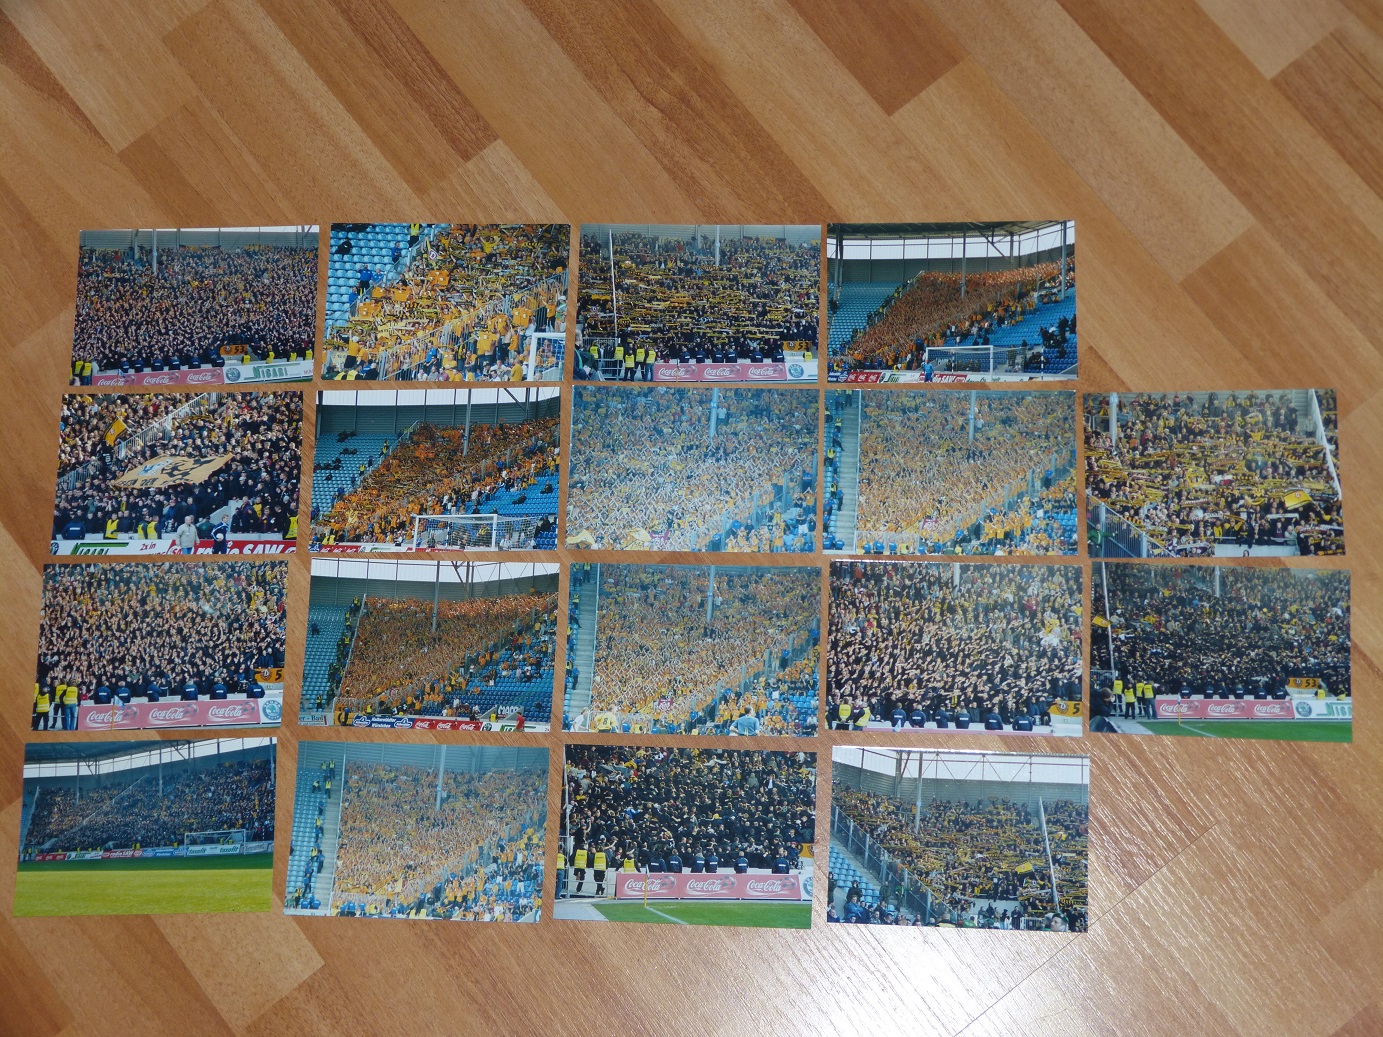 [Echange] Photos Ultras Inter e Dynamo Dresden contre stickers P108049903k3k